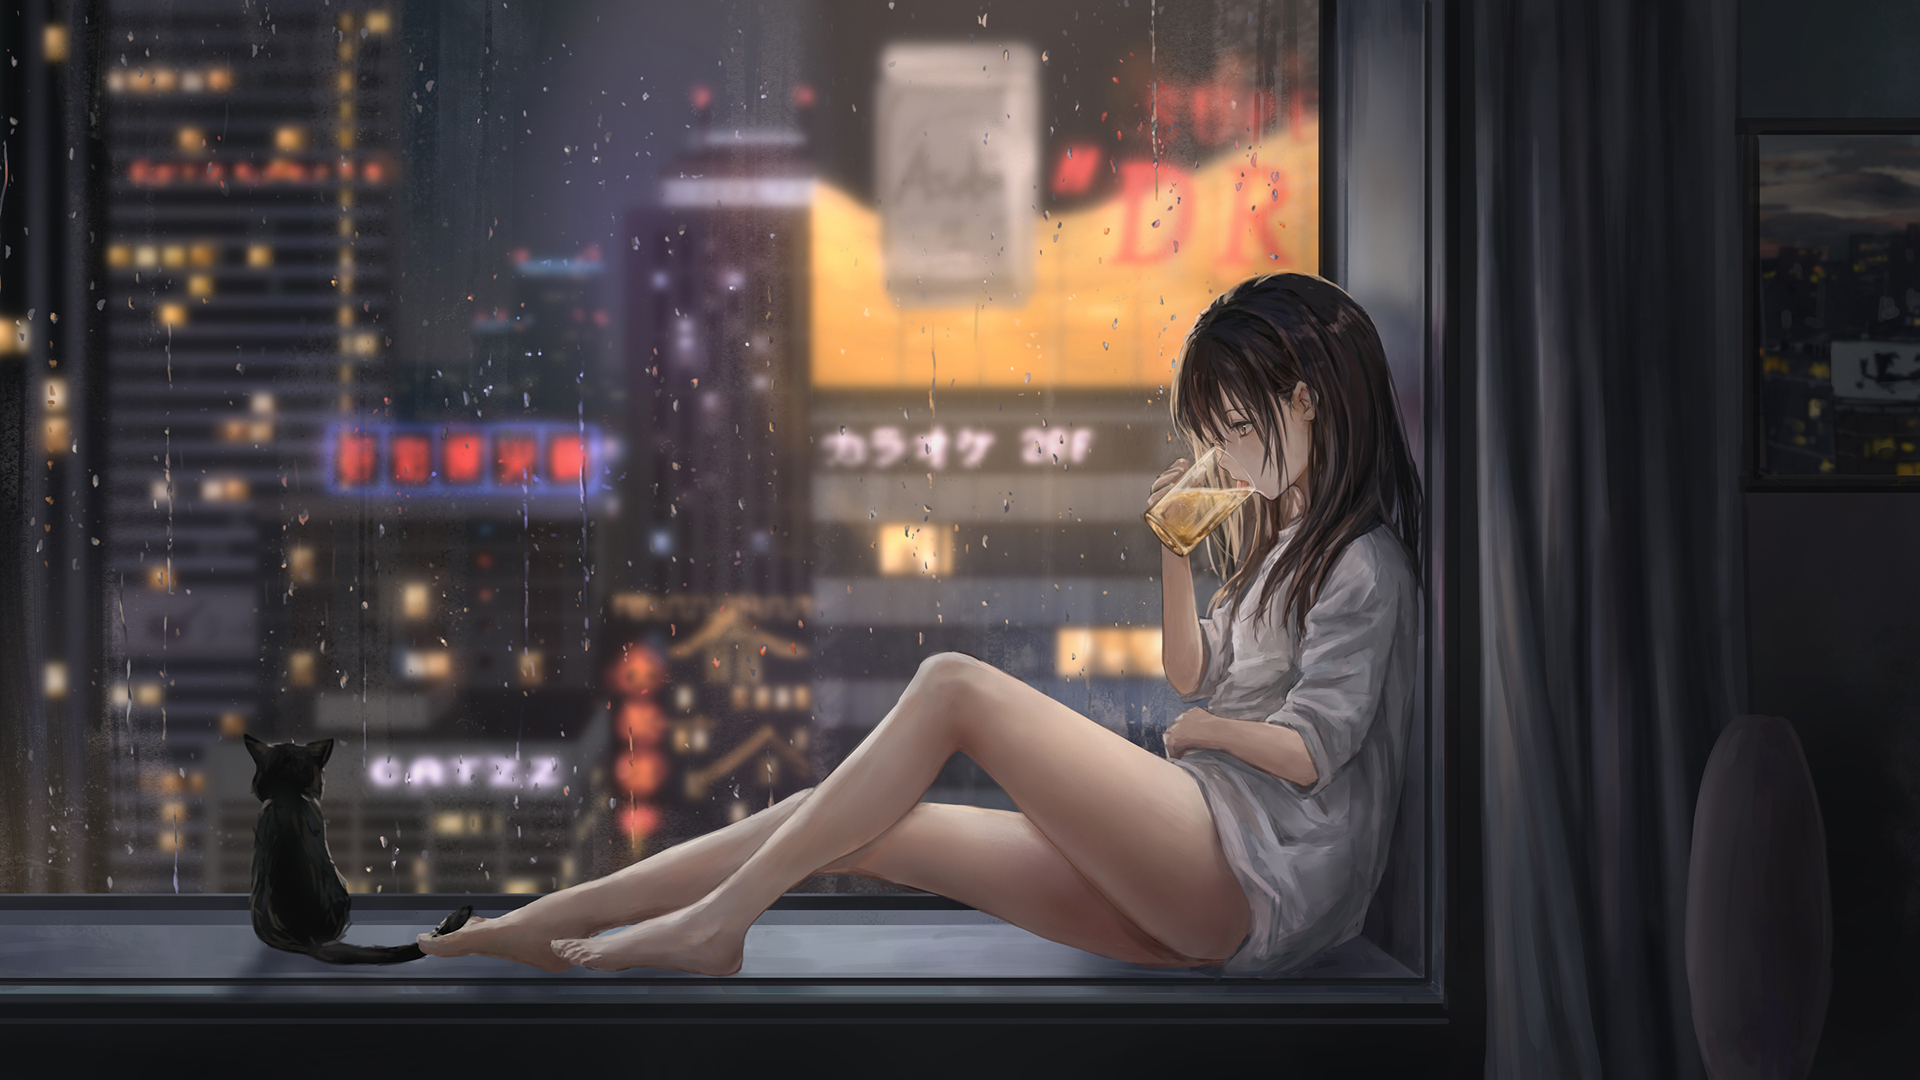 下雨天飘窗前女孩与猫动漫夜景